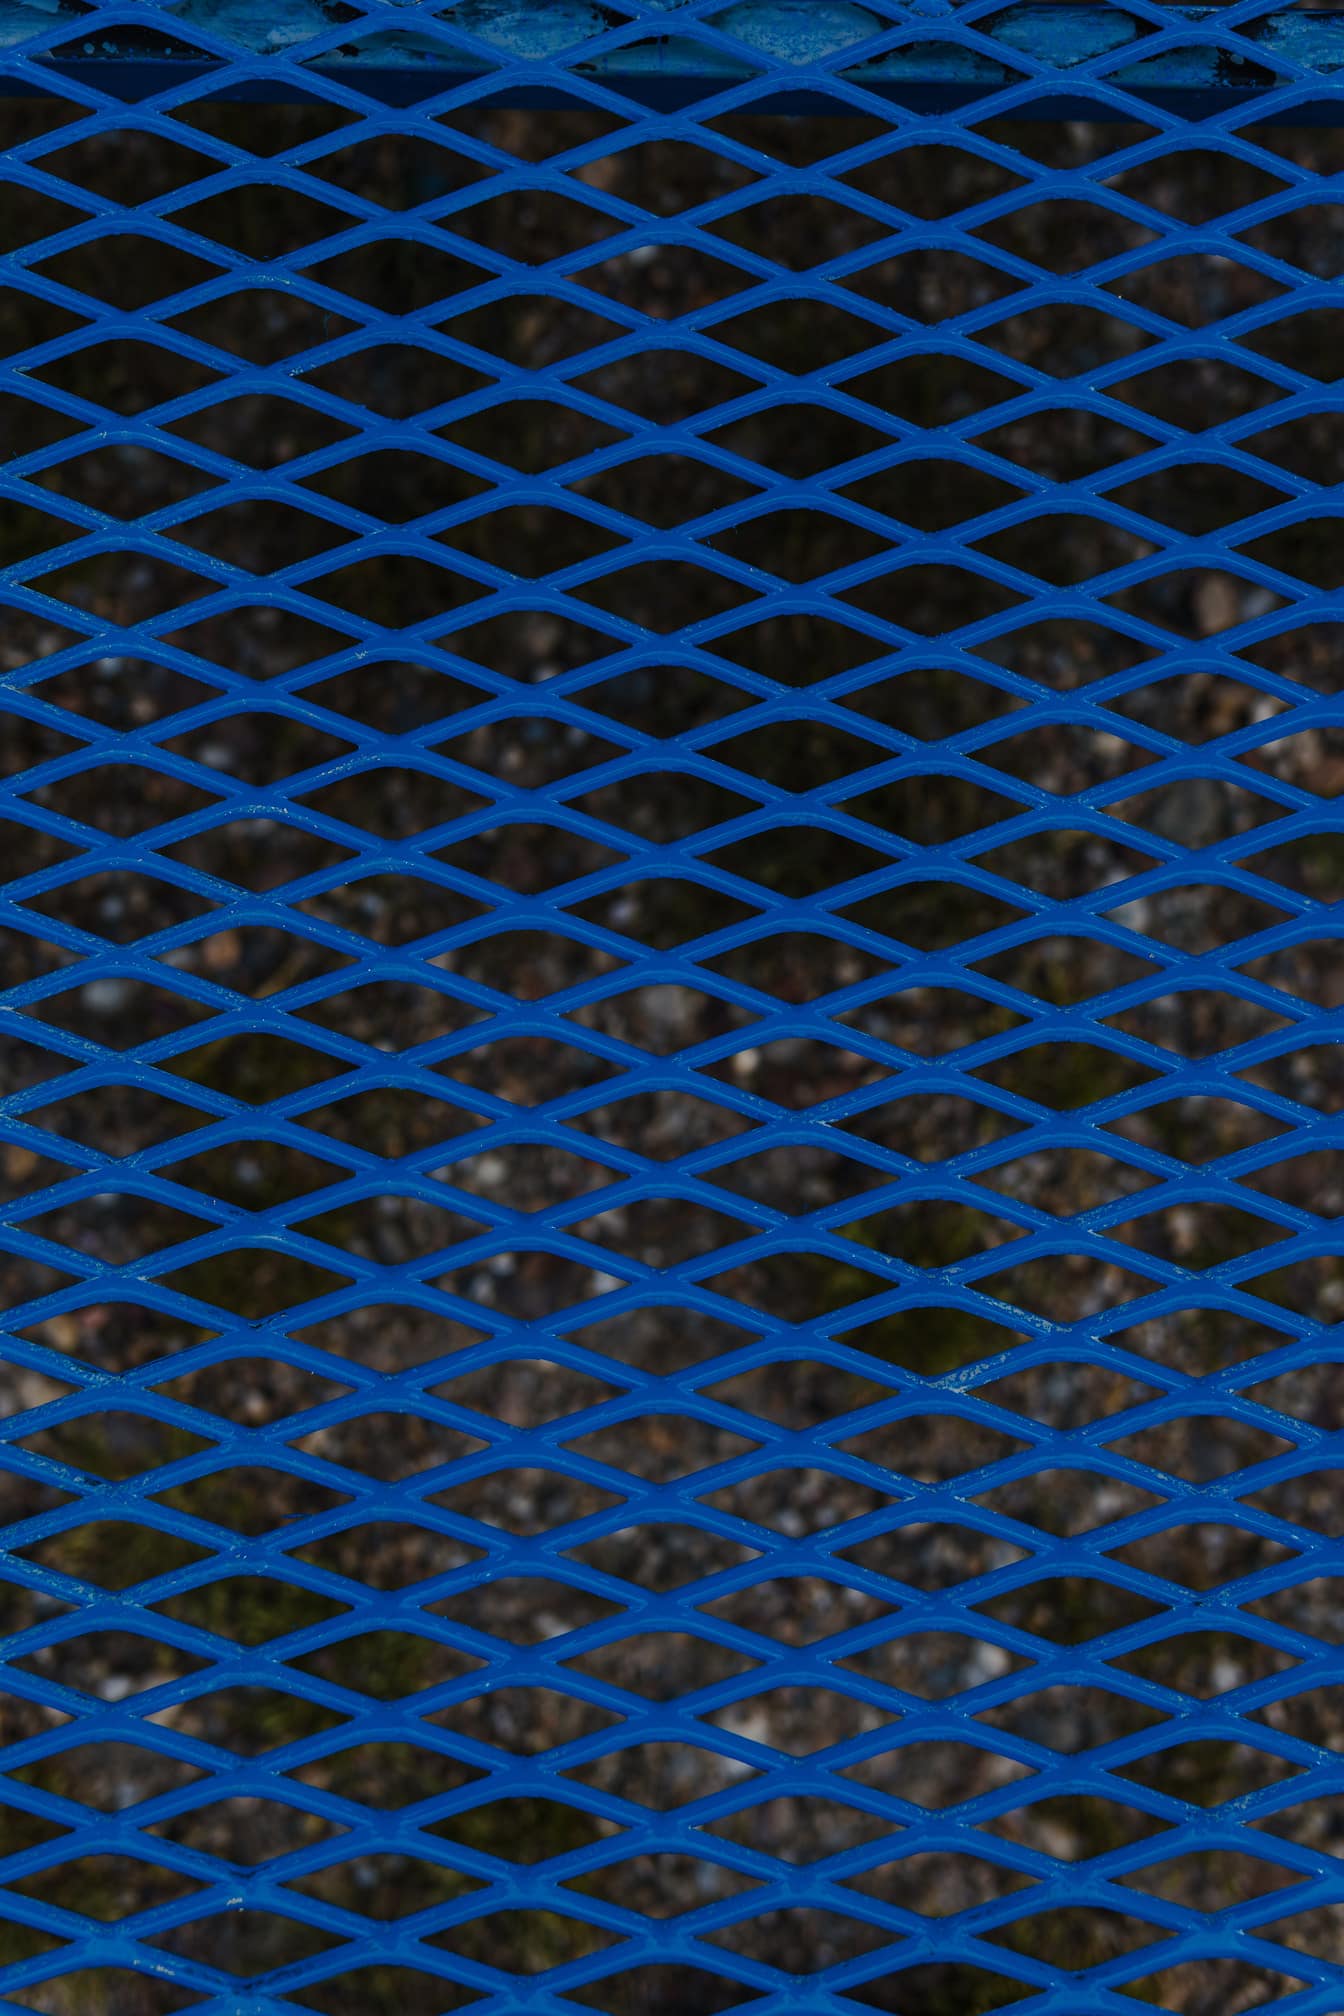 Textura de rejilla de metal azul oscuro con patrón geométrico de rombos